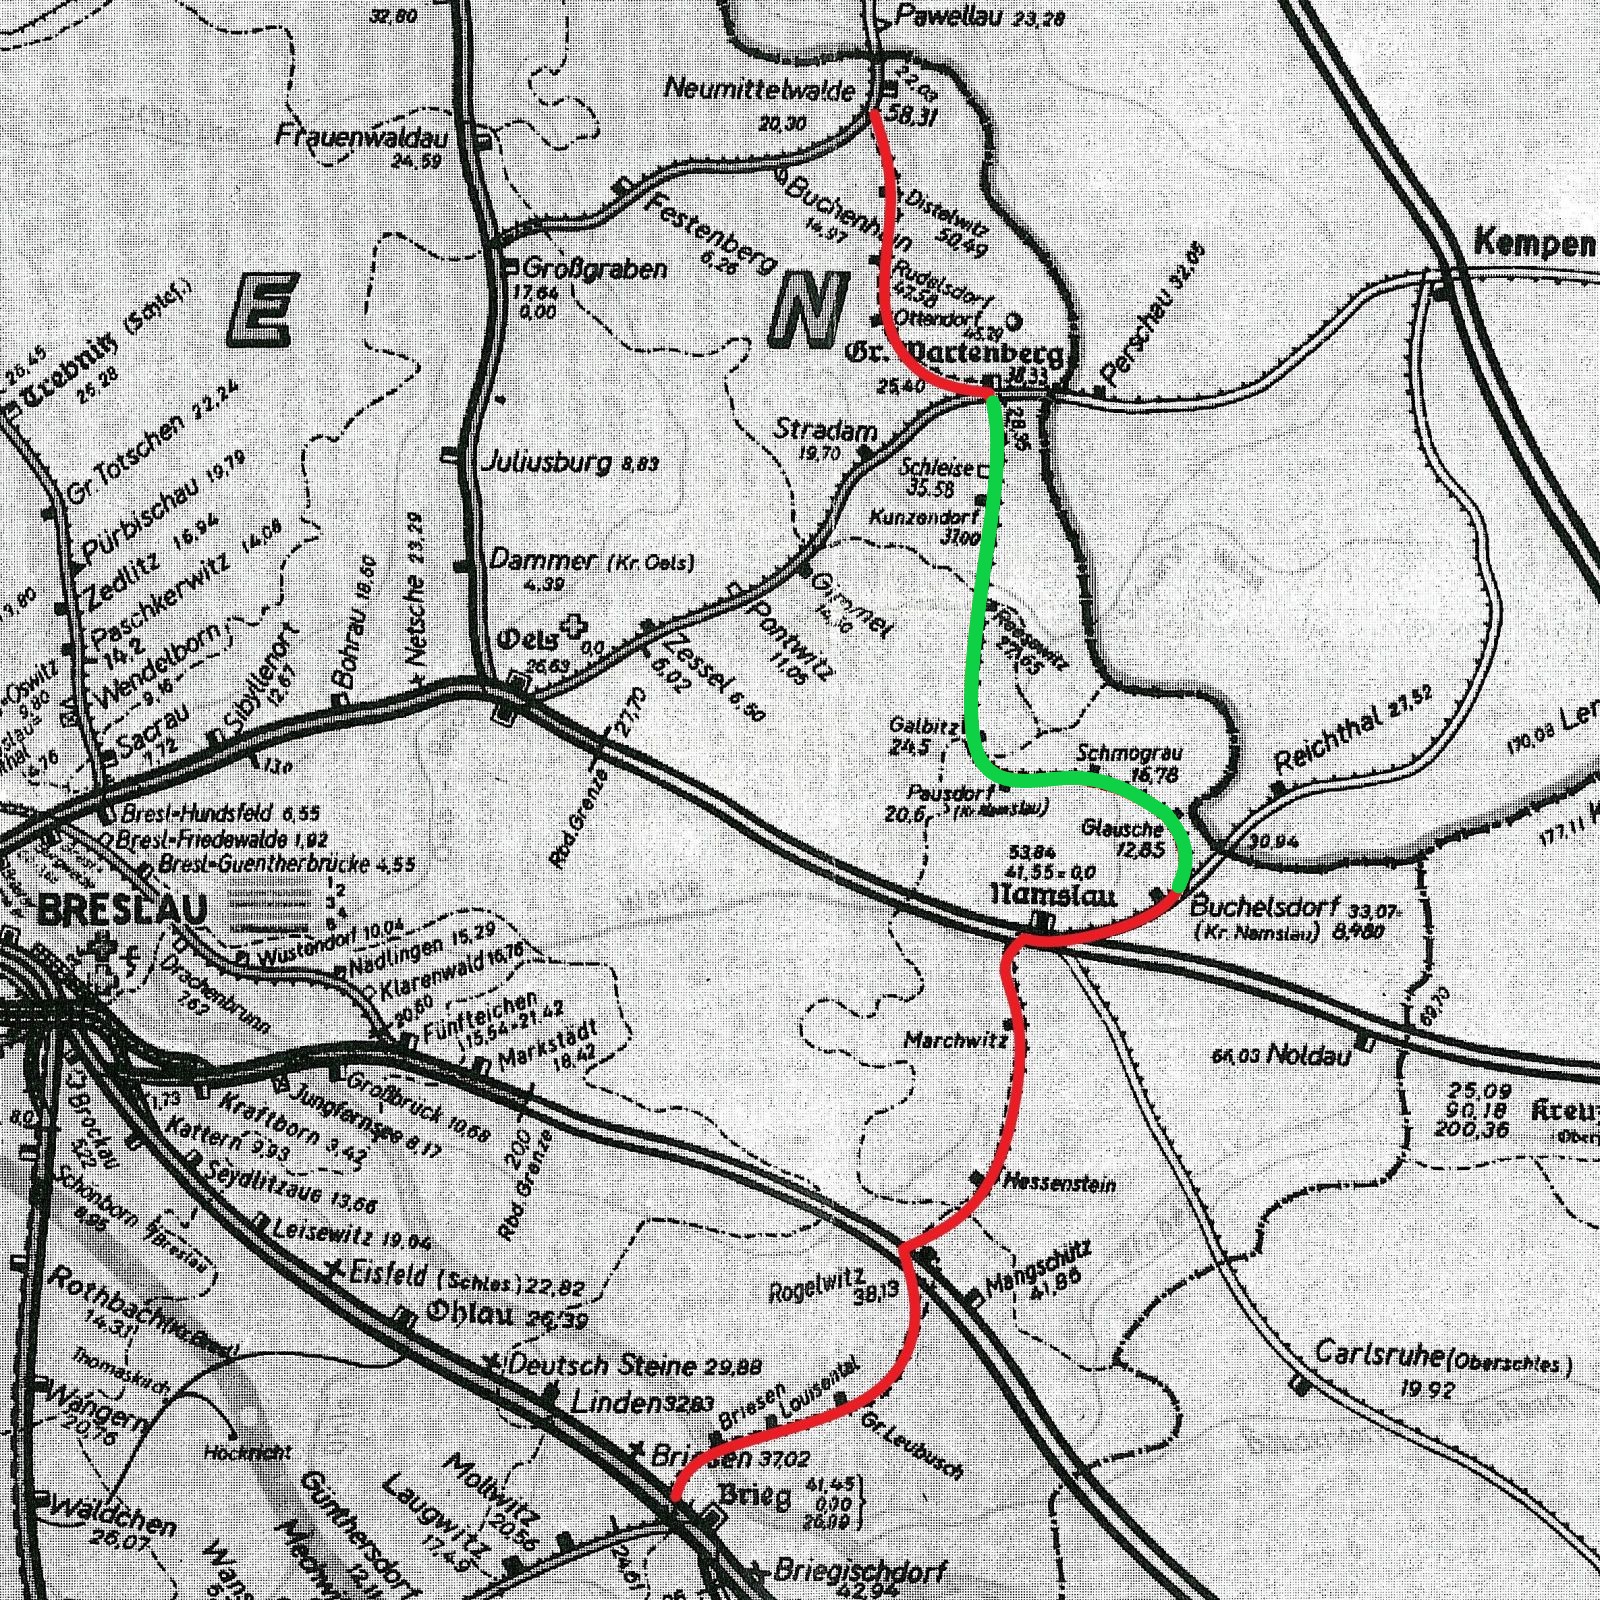 W 1940 roku, Syców miał być stacją, przez którą, poza koleją pierwotną, miała przebiegać kolej graniczna, którą ukończono jedynie jako dochodzącą od strony południowej, odcinkiem Bukowa Śląska - Syców. Wspomniane połączenie, powstawało w latach 1937 - 1943. Pierwszym z trzech etapów oddawania tego odcinka, był 12.1. kilometrowy fragment z Bukowej Śląskiej do Pawłowic Namysłowskich (25.10.1937). Później powstał krótki odcinek do Gołębic o długości 3.99 km. (01.03.1939). Ostatnim etapem budowy, było uzupełnienie z Gołębic do Sycowa (15.09.1943) o długości 13.75 km., zamykając tym kolejny etap, skromnie zaplanowanej wcześniej kolei granicznej. Długość nowo wybudowanego odcinka, pomiędzy stacjami węzłowymi Bukowa Śląska – Syców, wynosiła 29.85. km. 